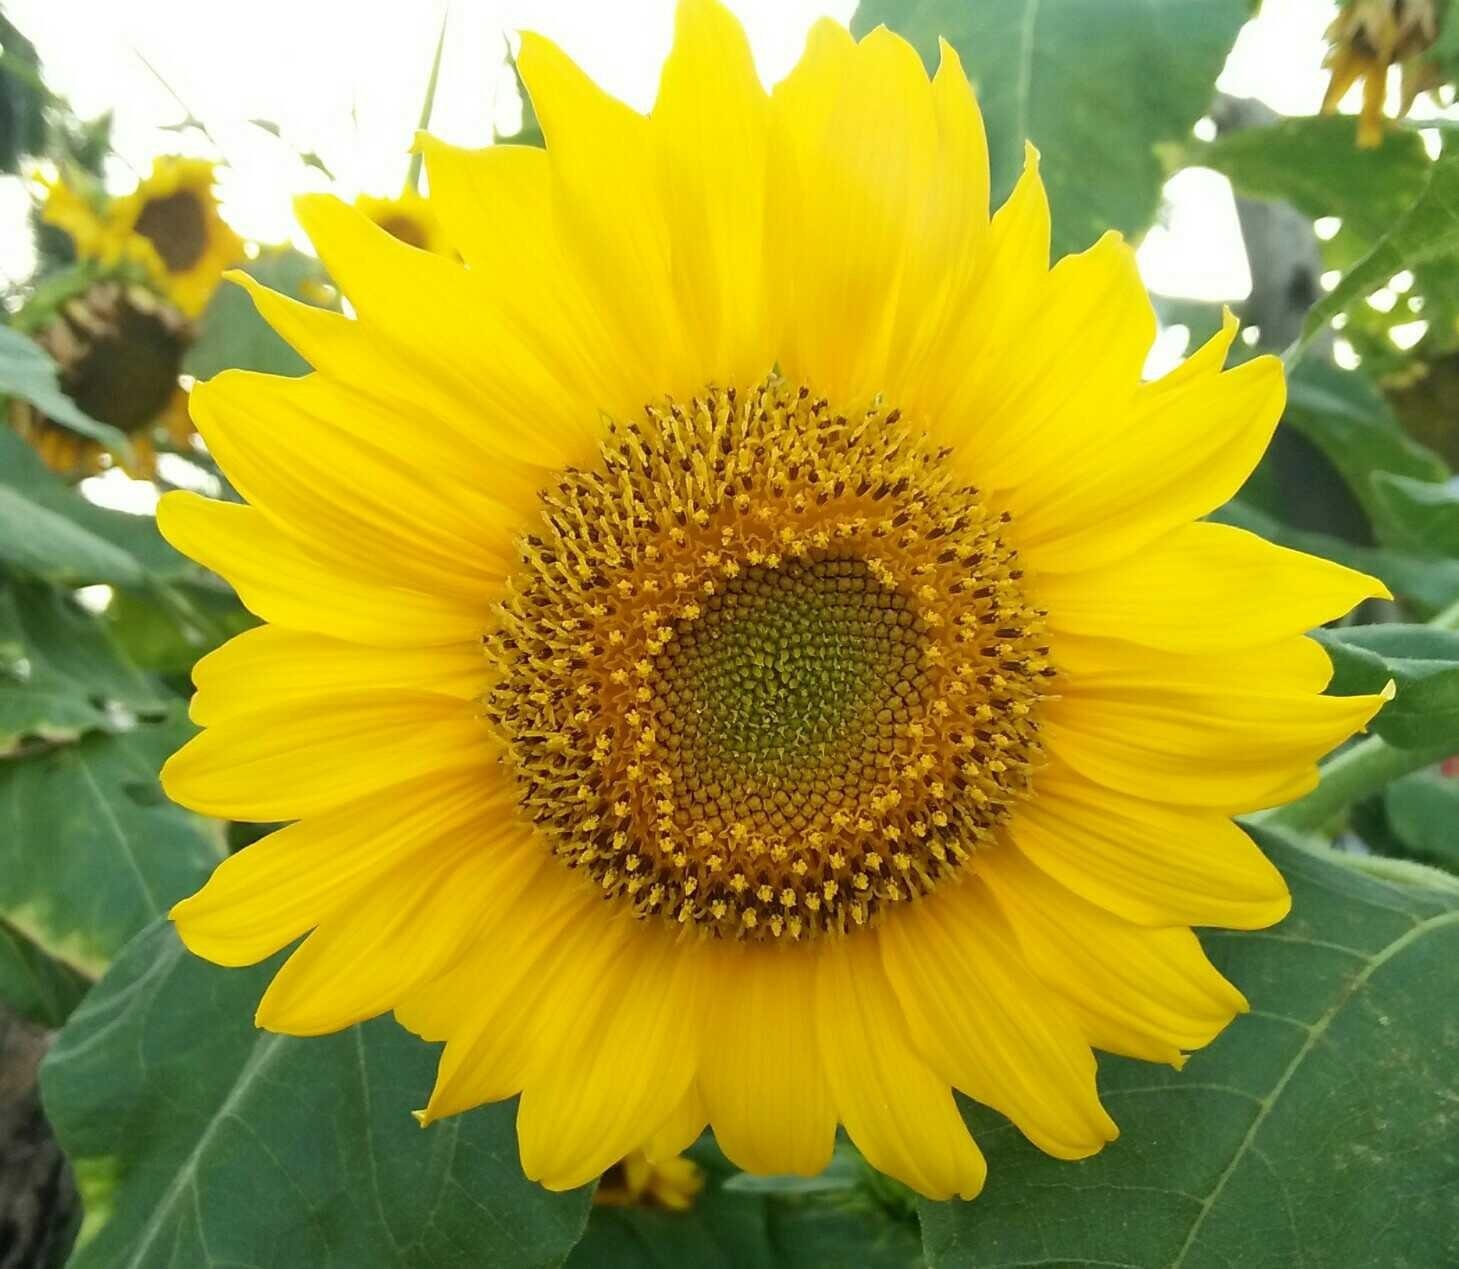 Koleksi Gambar Bunga Matahari Yang Cantik Terlengkap Eye Candy Photograph